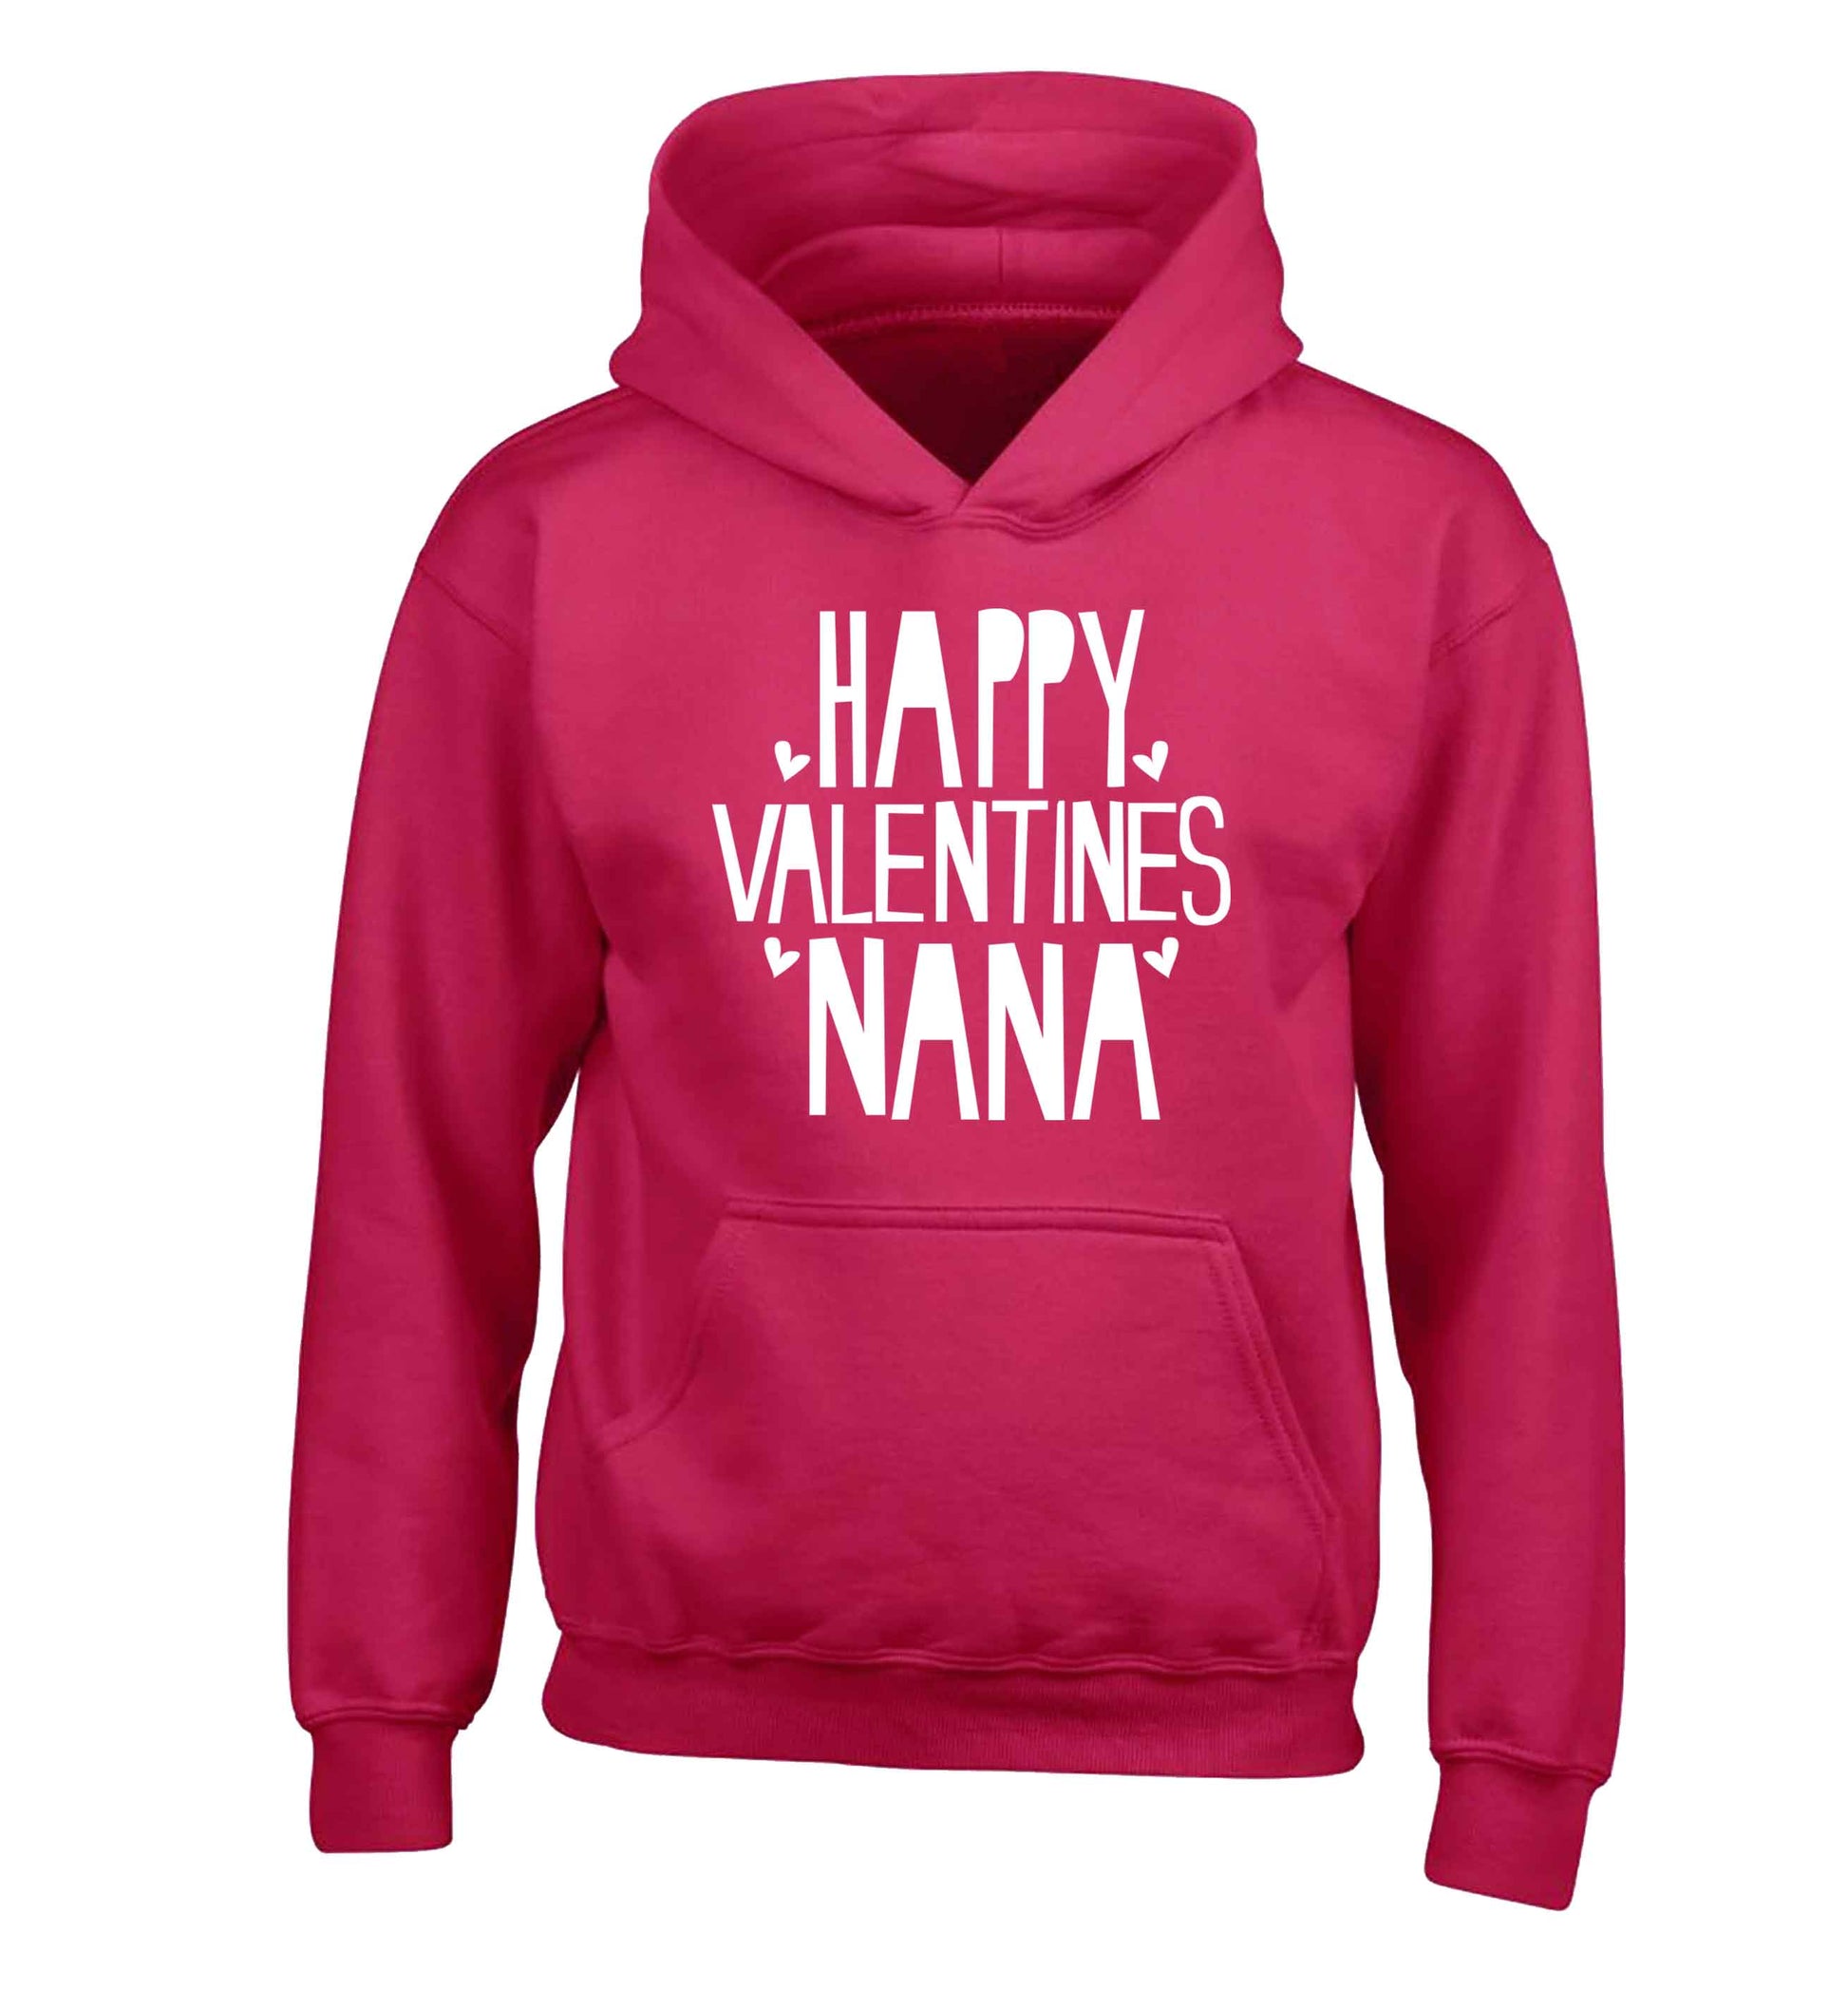 Happy valentines nana children's pink hoodie 12-13 Years